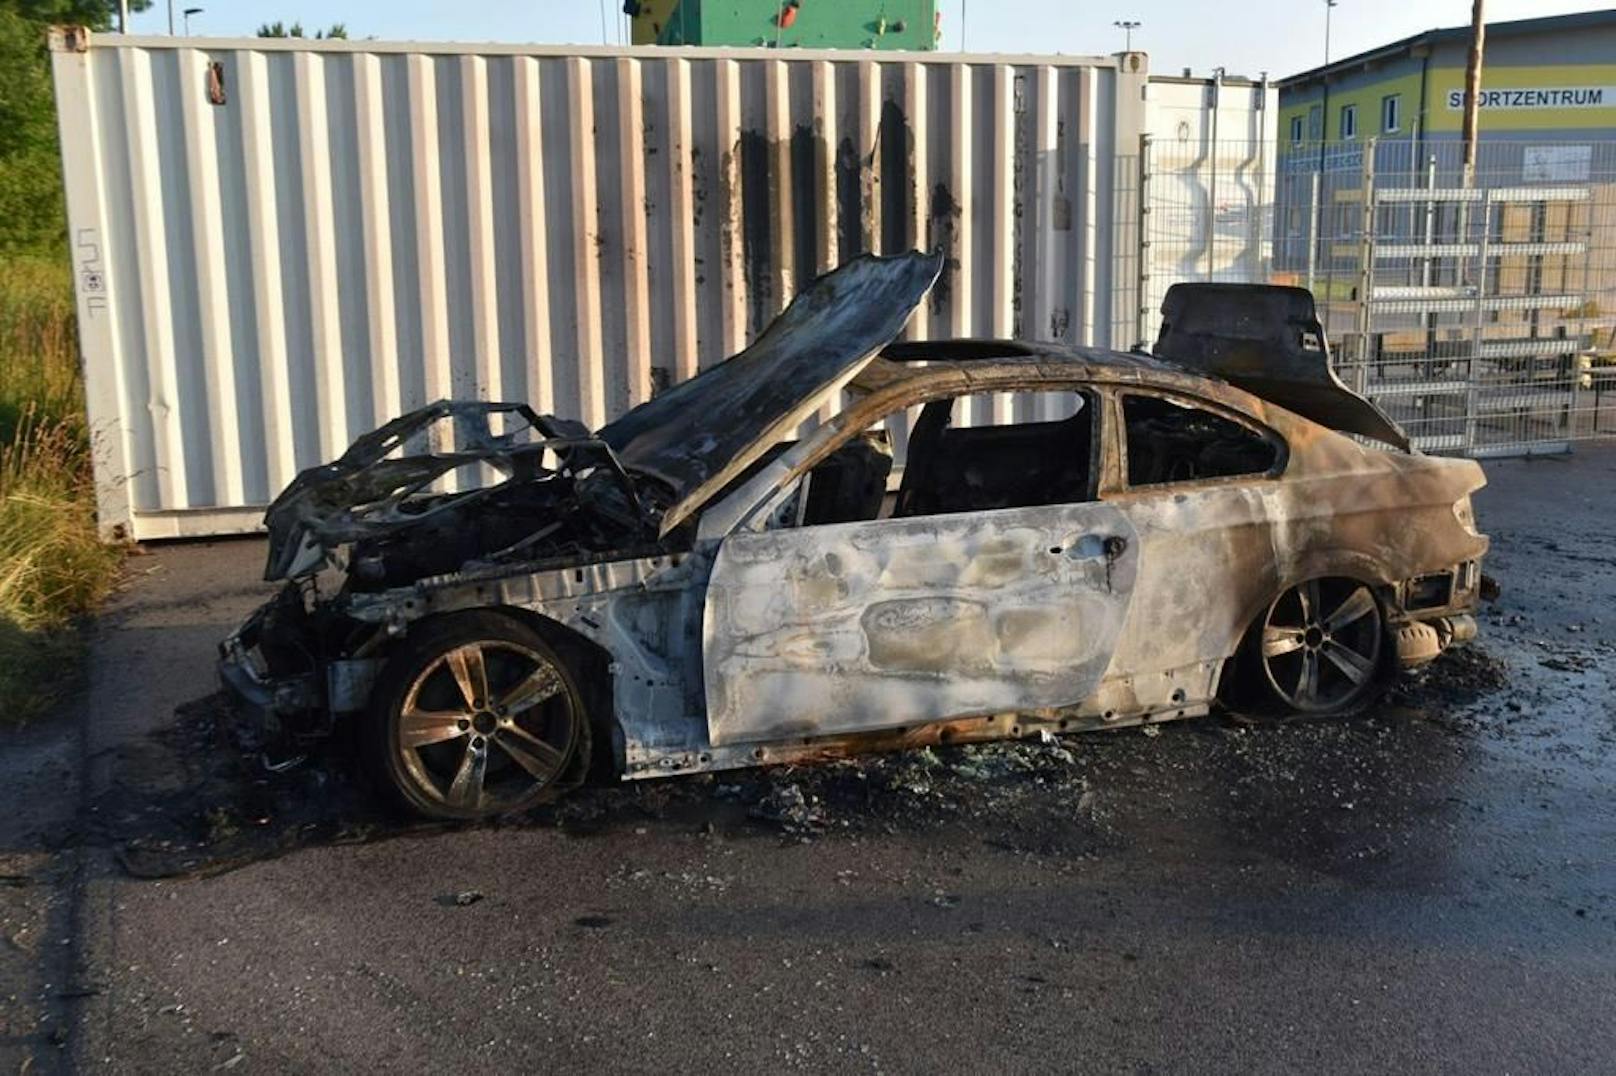 Der BMW ist völlig ausgebrannt.